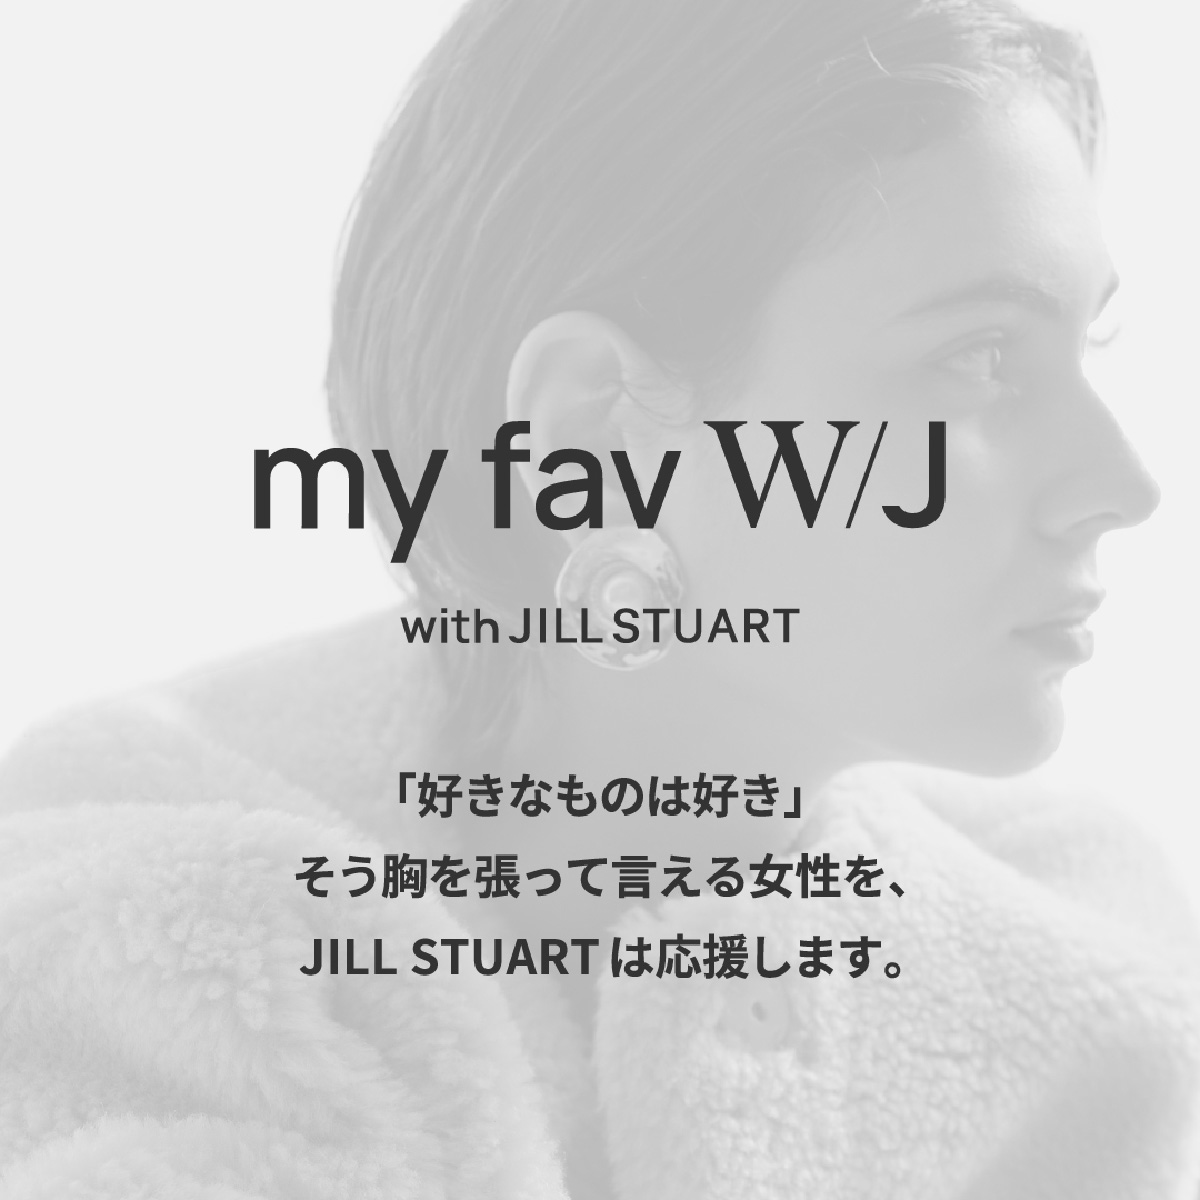 my fav W/J with JILL STUART